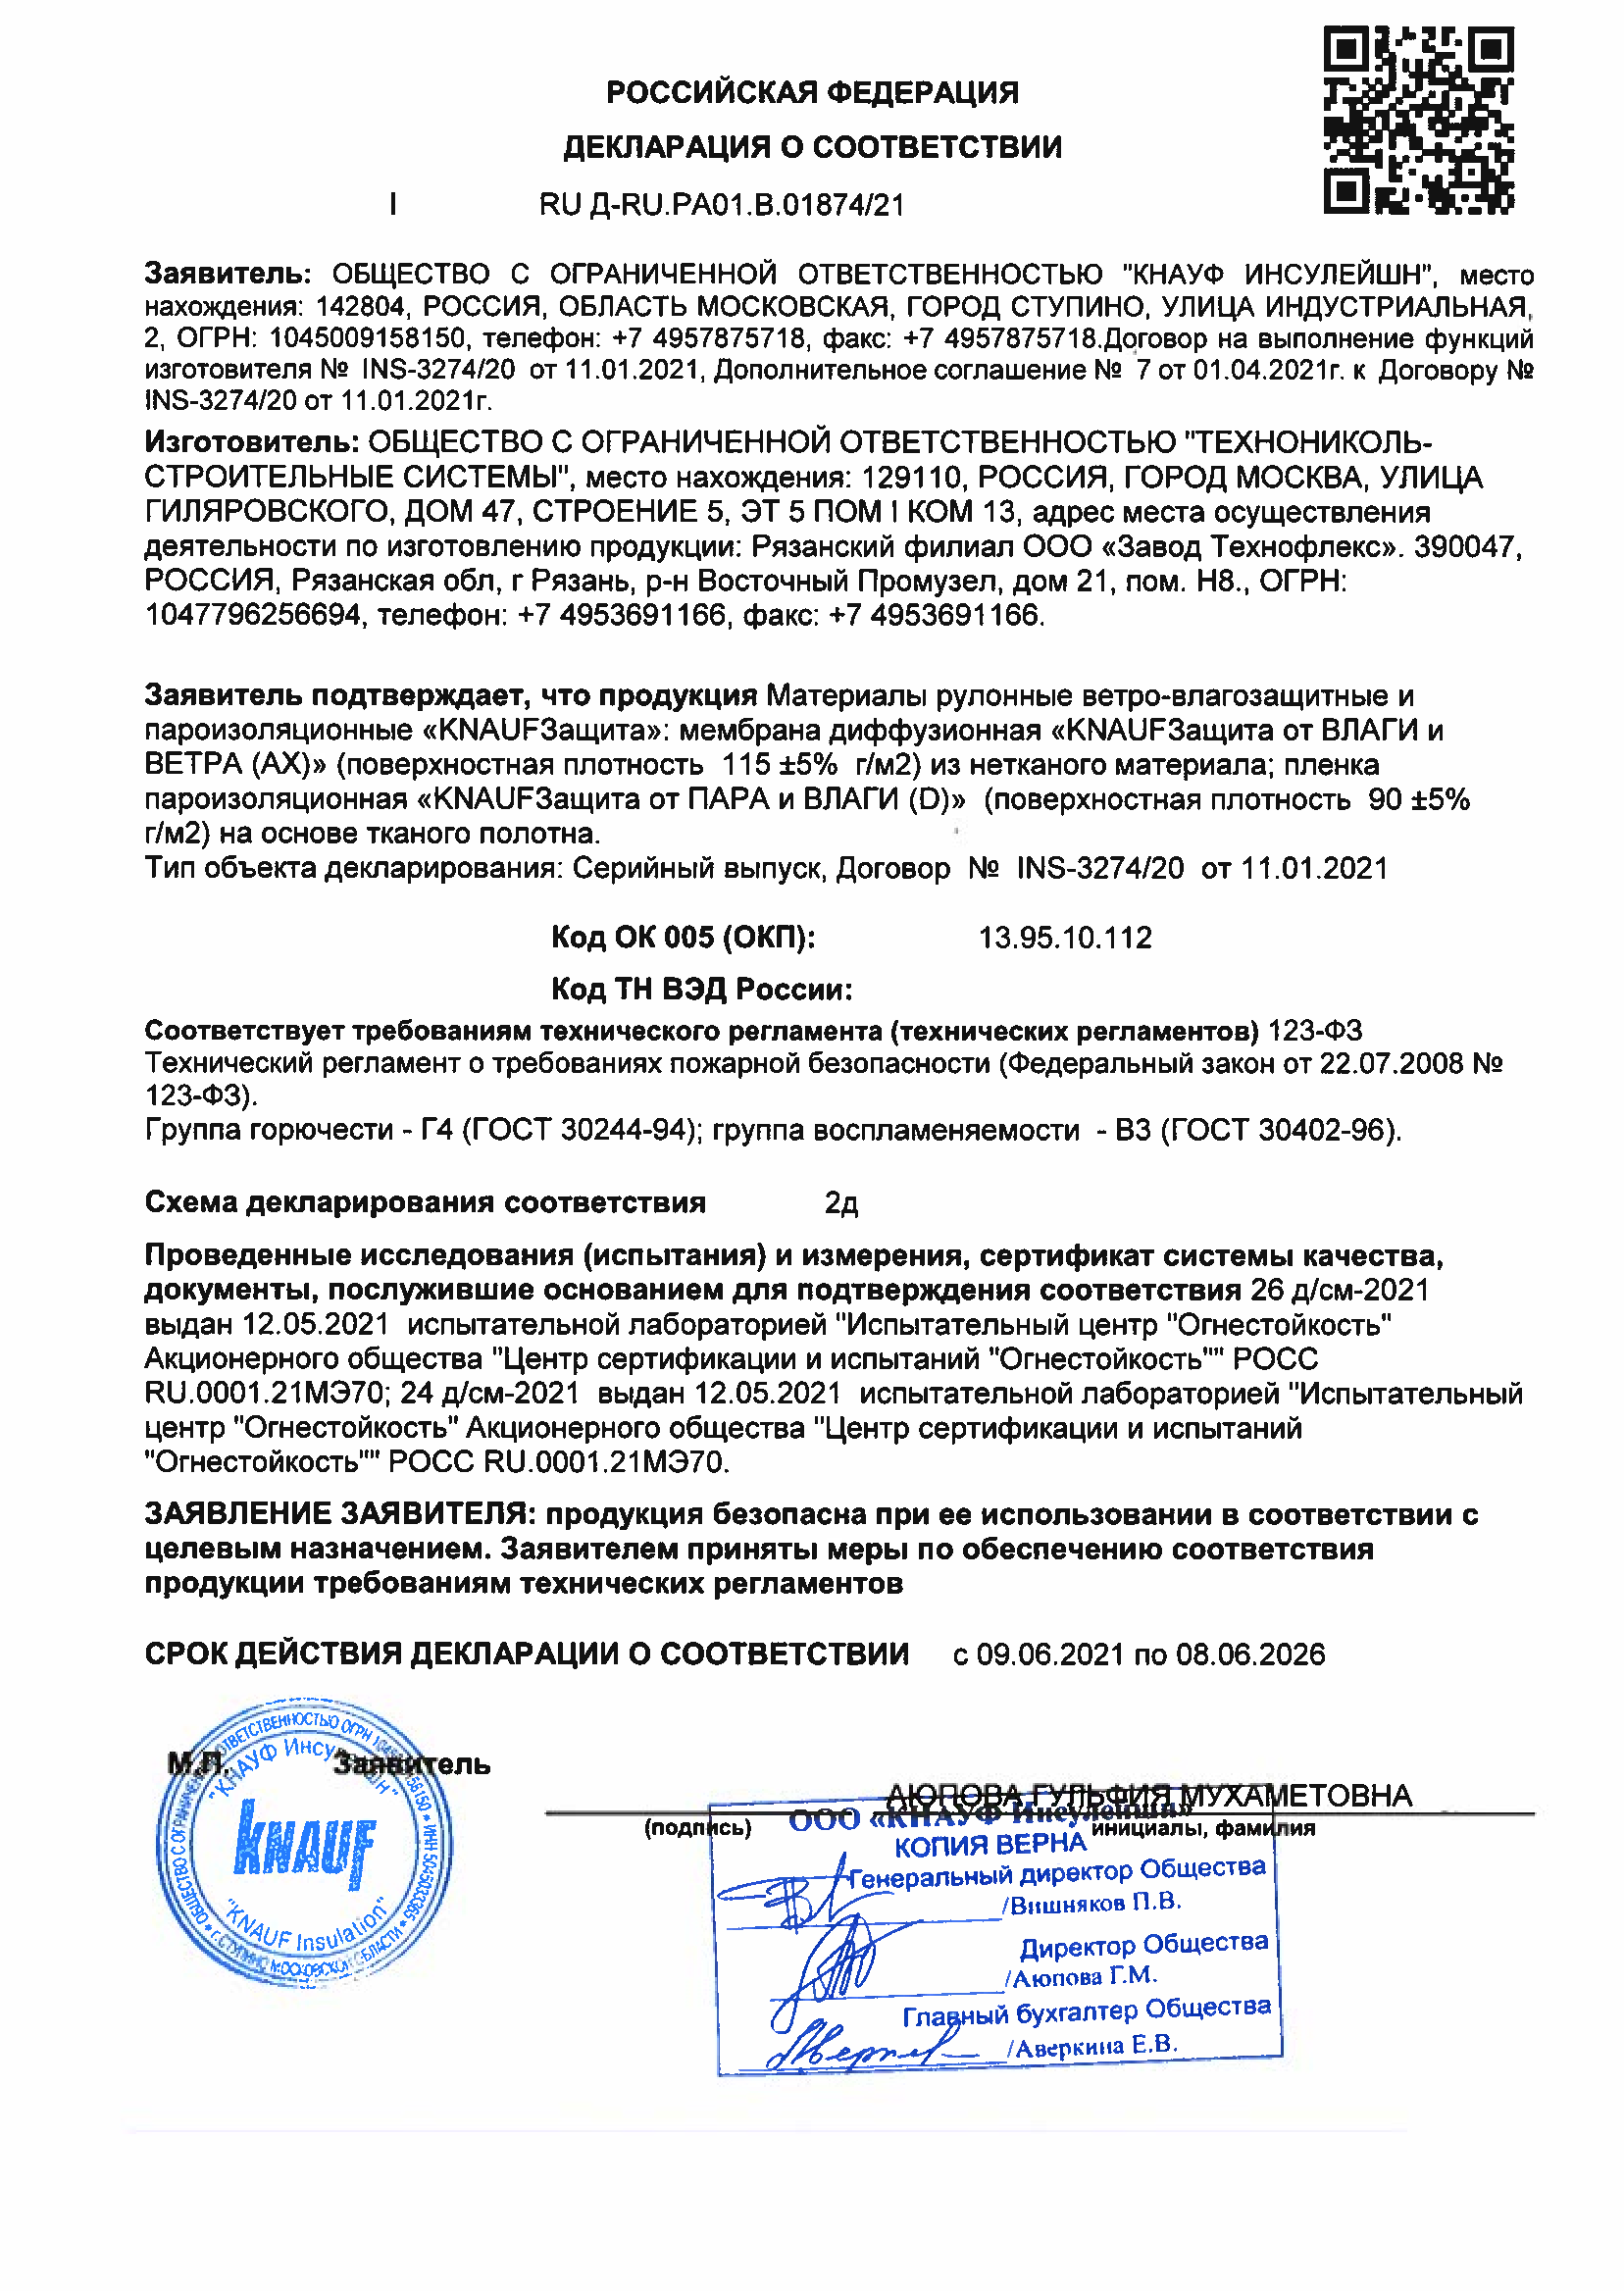 КНАУФ Защита: Декларация соответствия РОСС RU Д-RU.РА01.В.01874.21